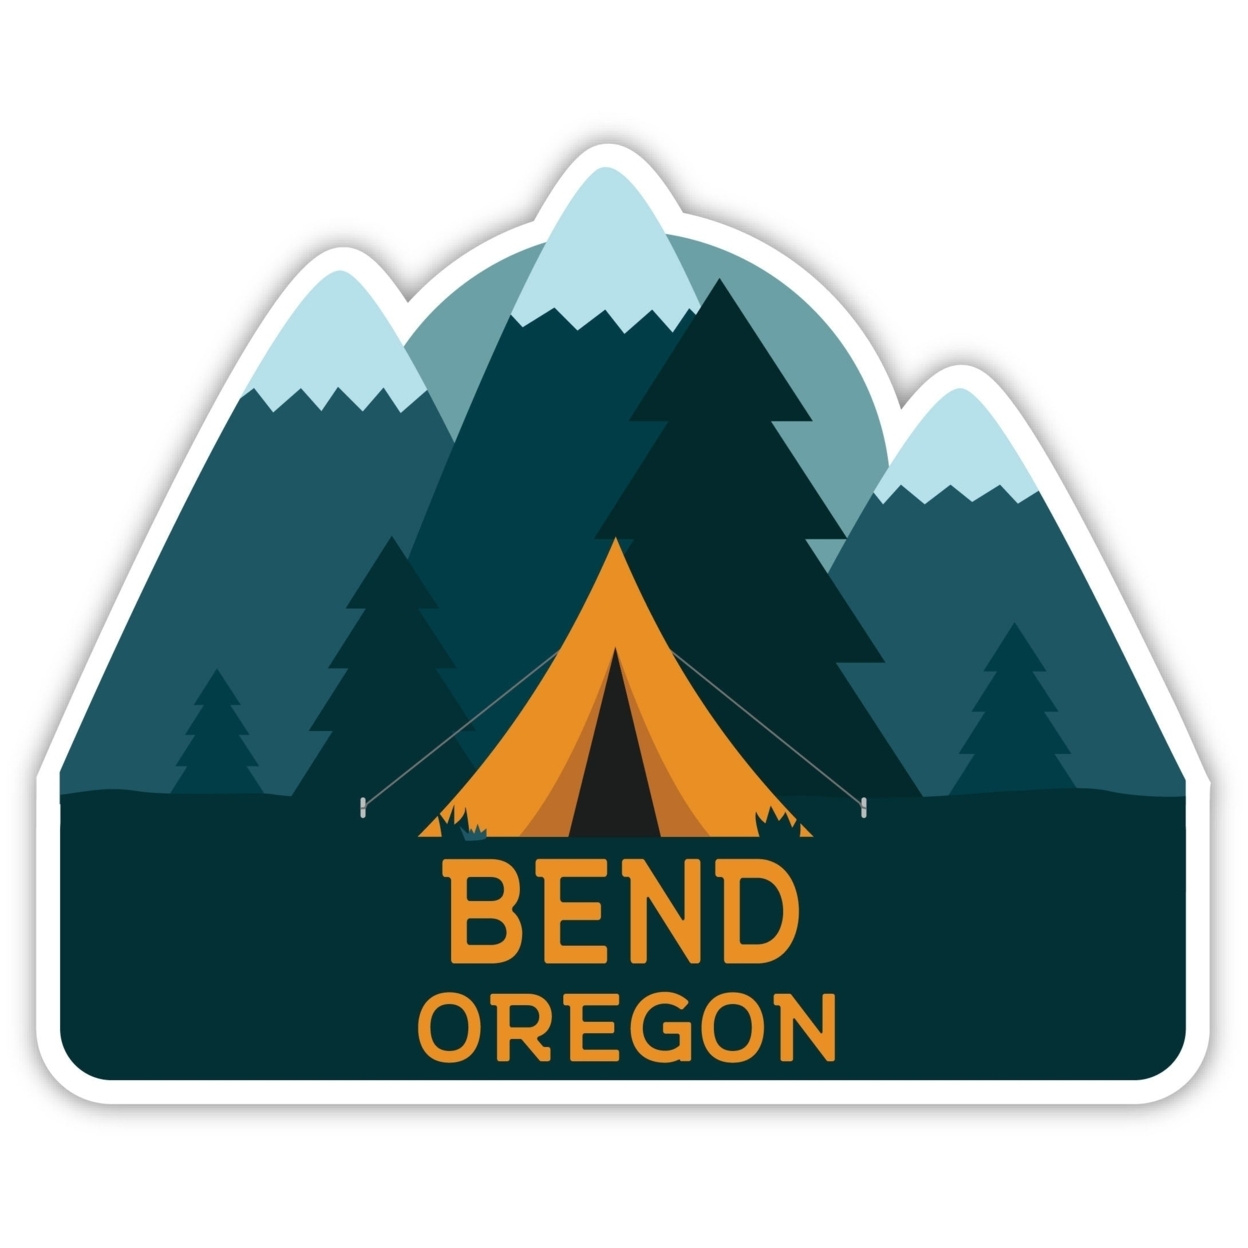 Bend Oregon Souvenir Decorative Stickers (Choose Theme And Size) - Single Unit, 4-Inch, Tent